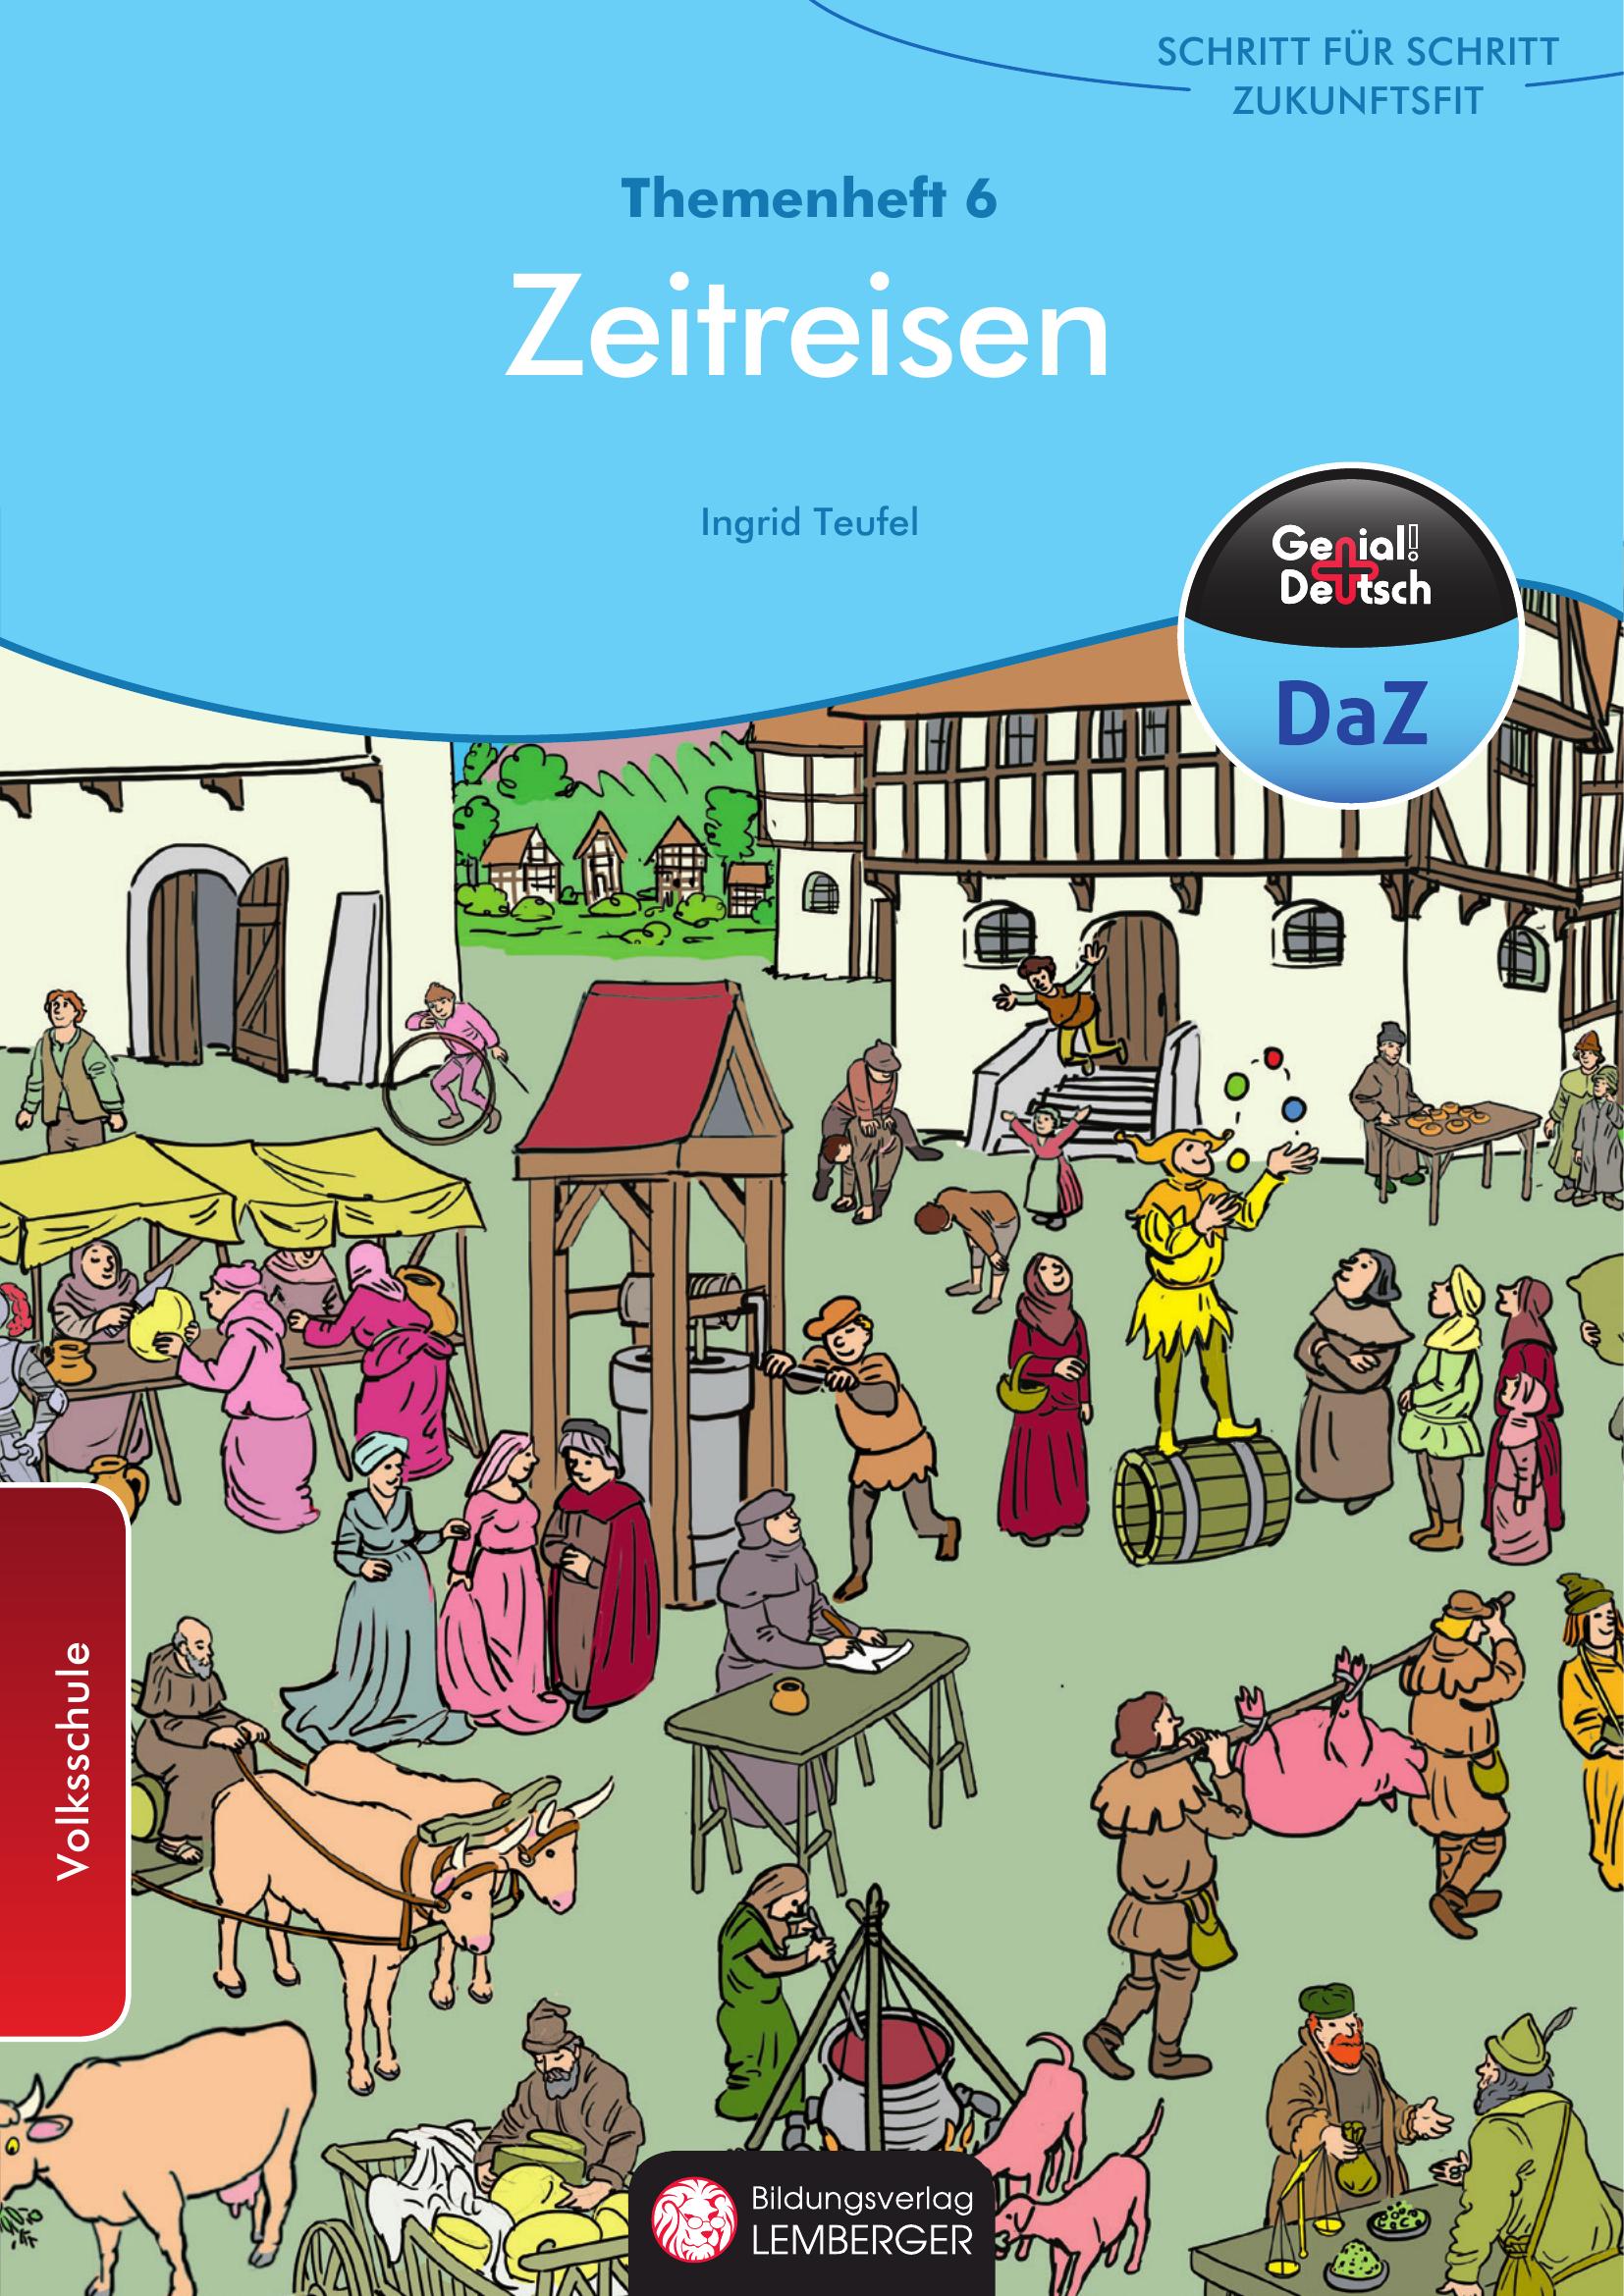 Genial! Deutsch DaZ - Schritt für Schritt zukunftsfit - Schulbuch - Themenheft 6 VS: Zeitreisen